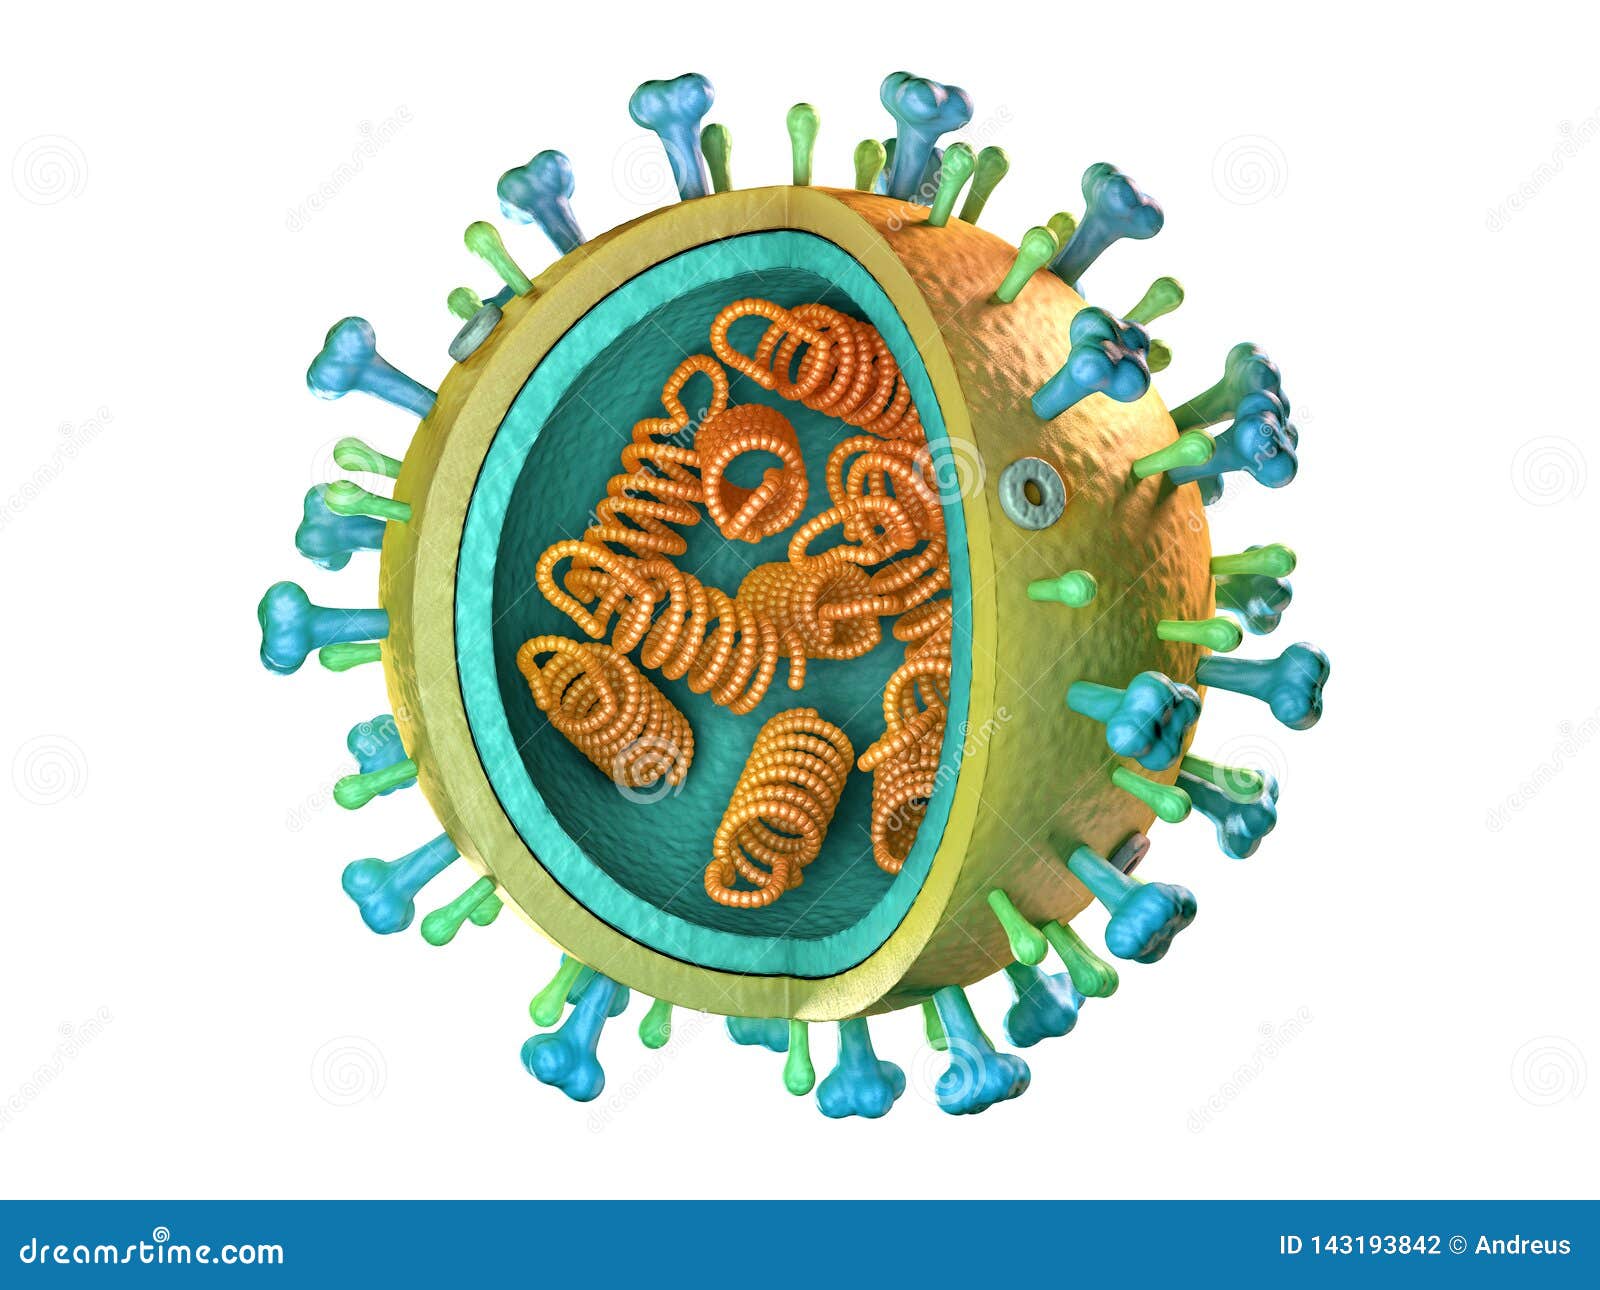 influenza virus diagram